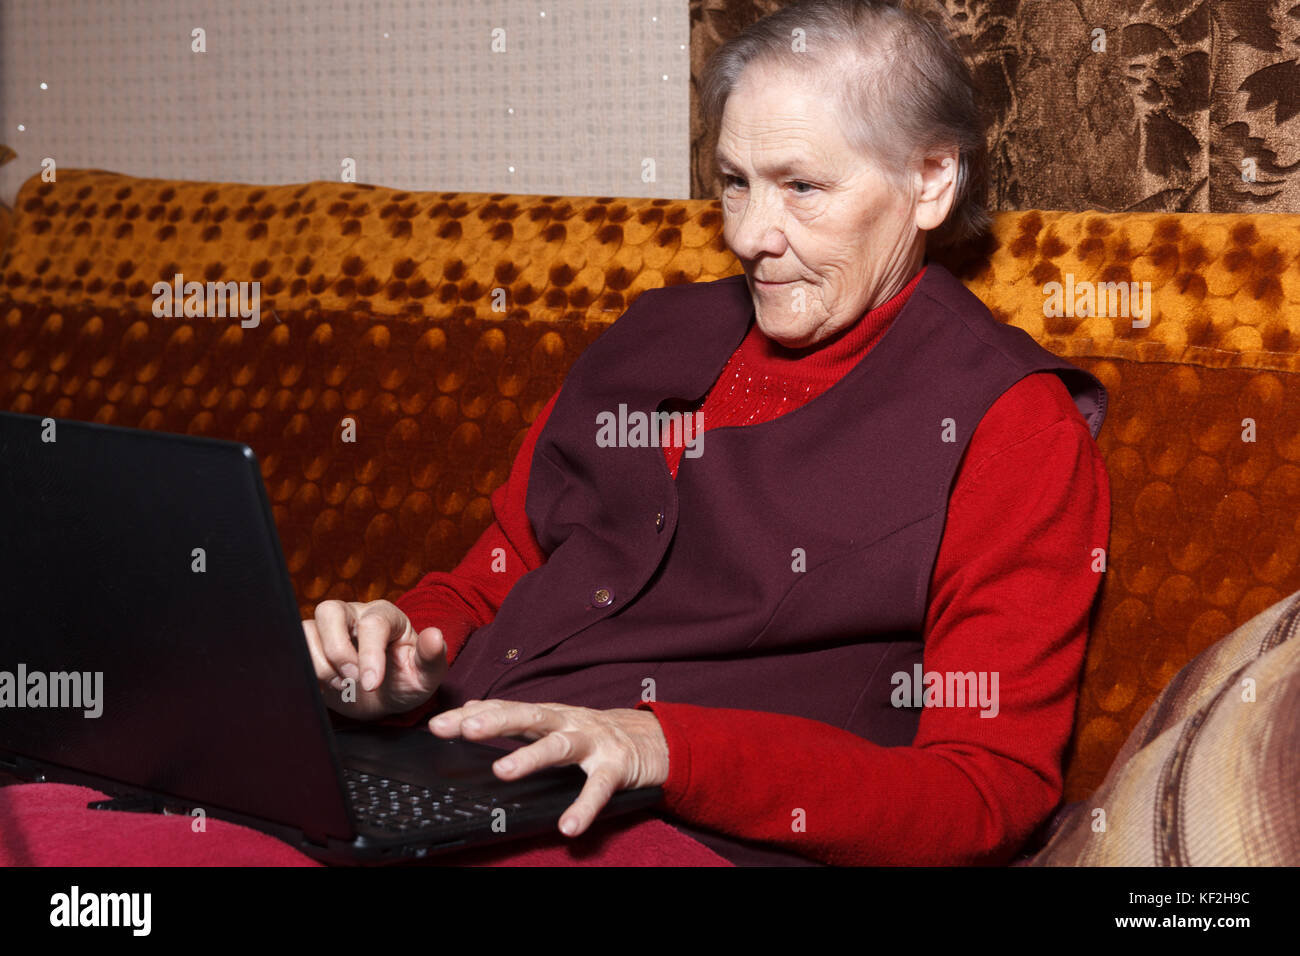 Senior women using computer Stock Photo